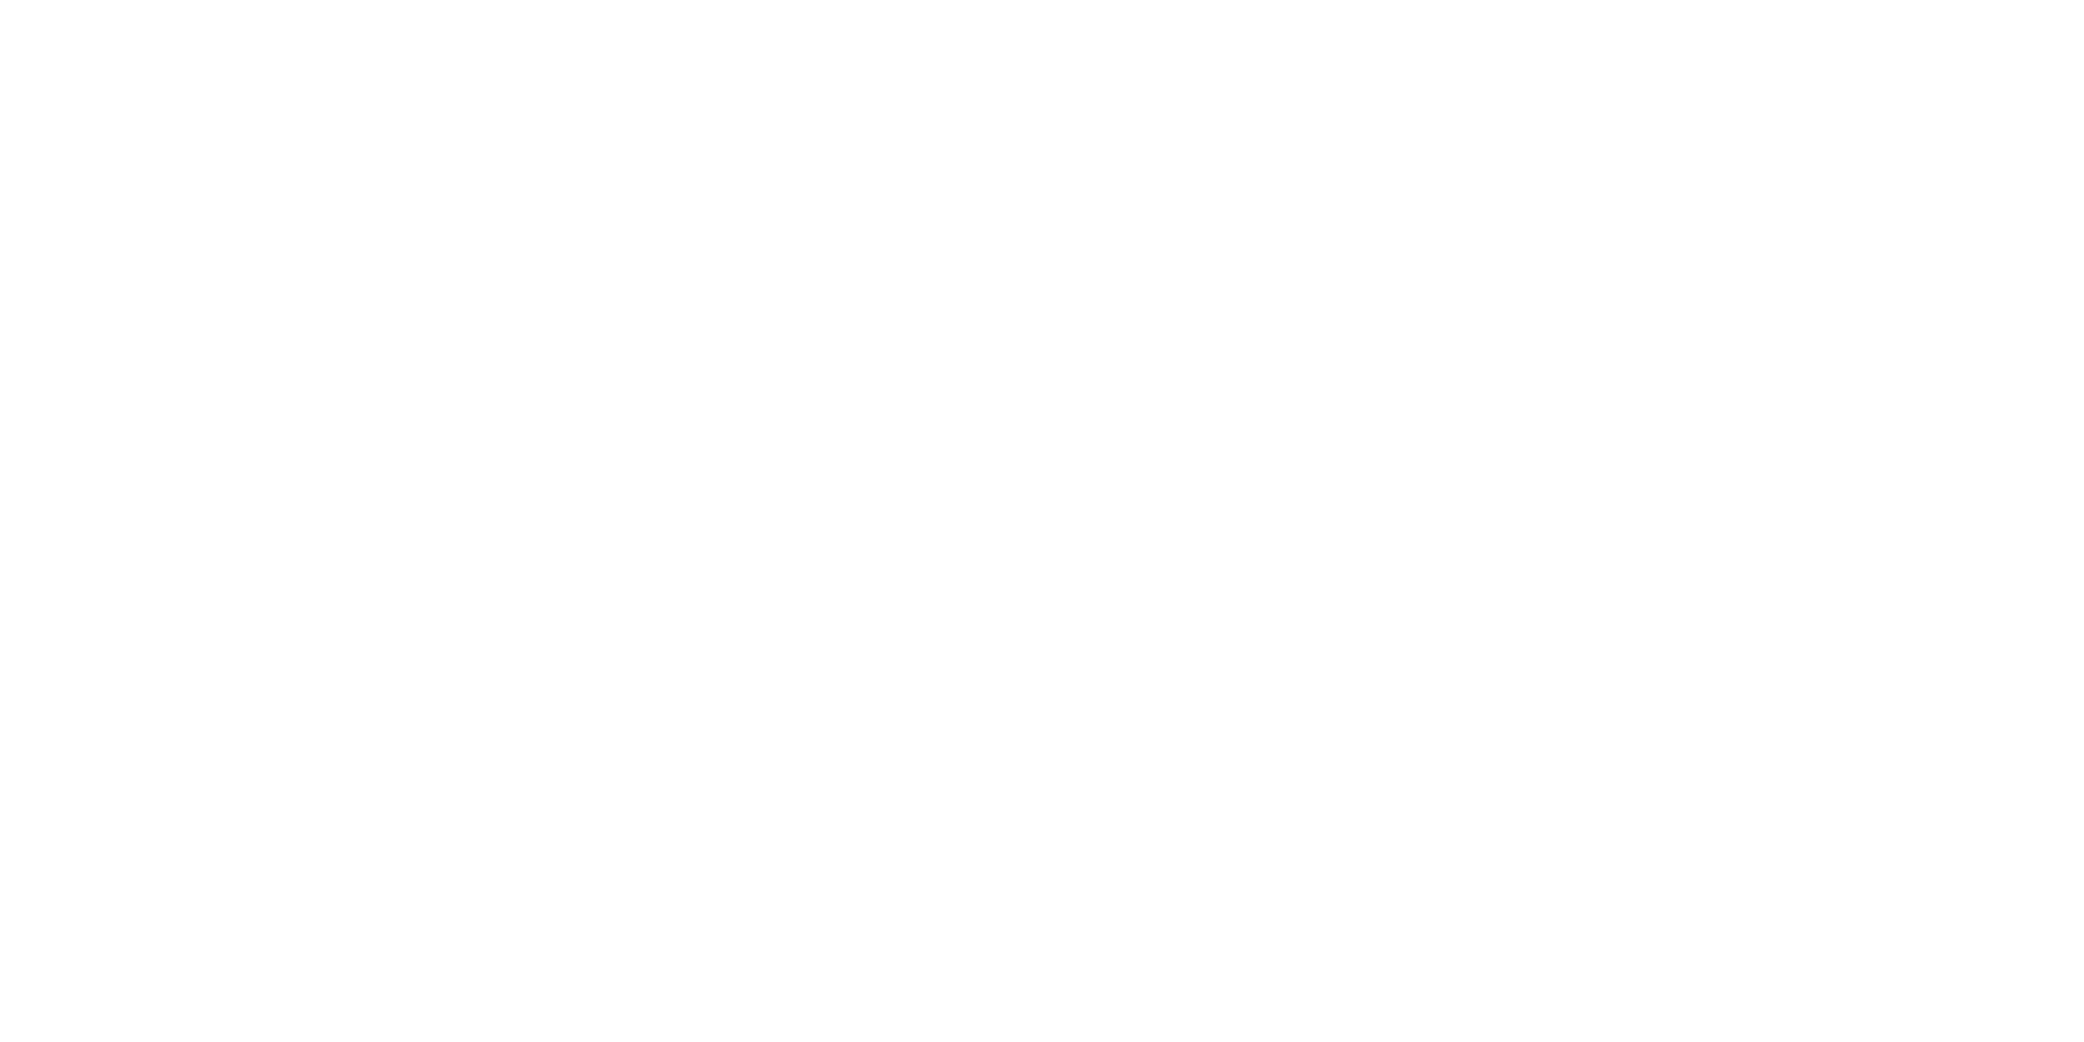 Logo WFL